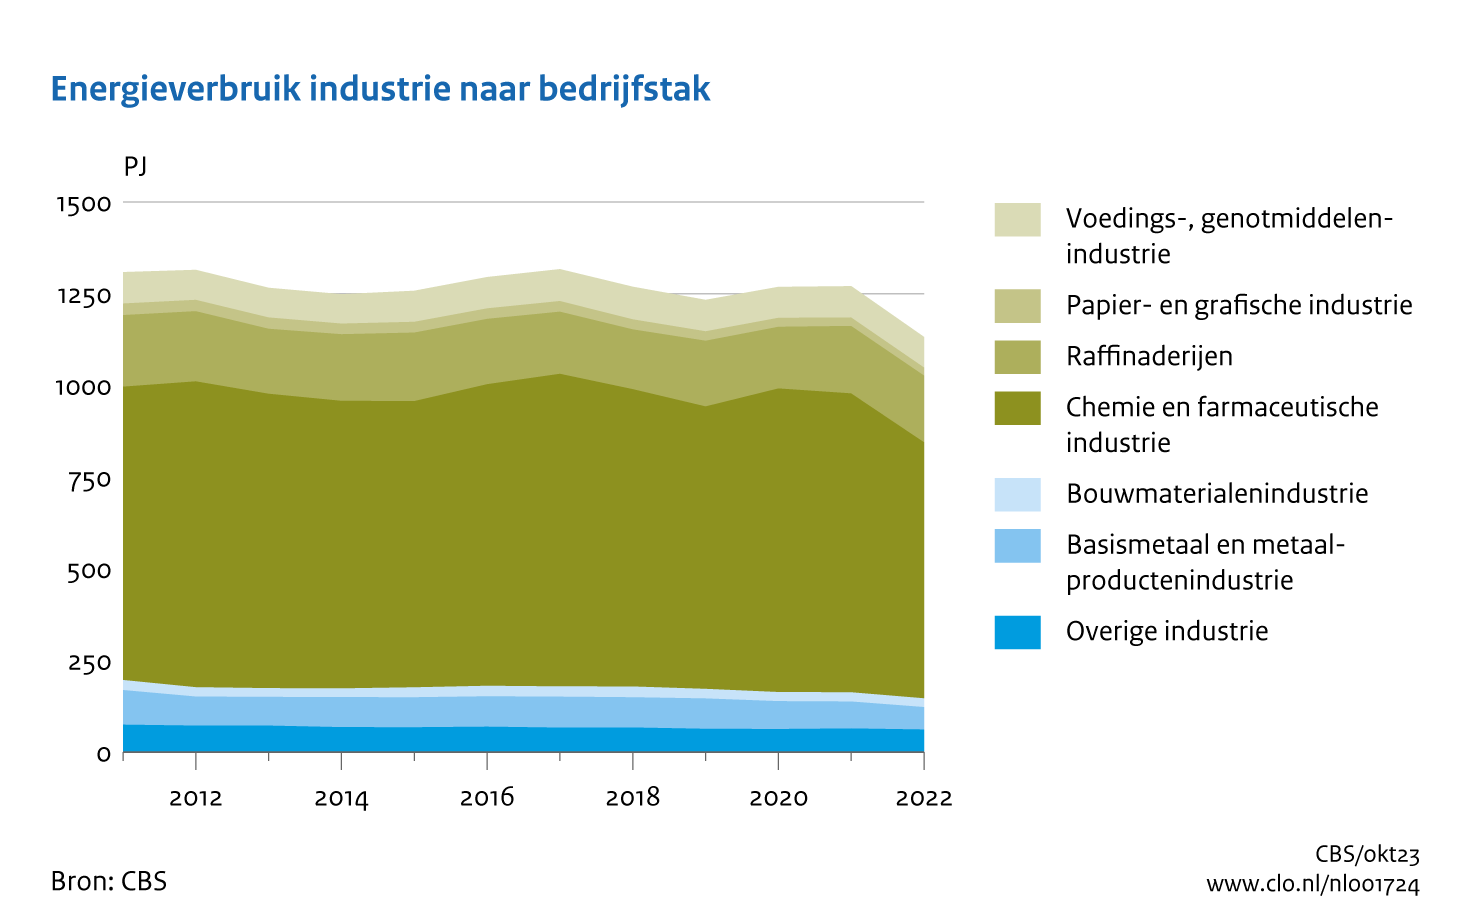 Figuur Energieverbruik industrie naar bedrijfstak 2011-2022. In de rest van de tekst wordt deze figuur uitgebreider uitgelegd.